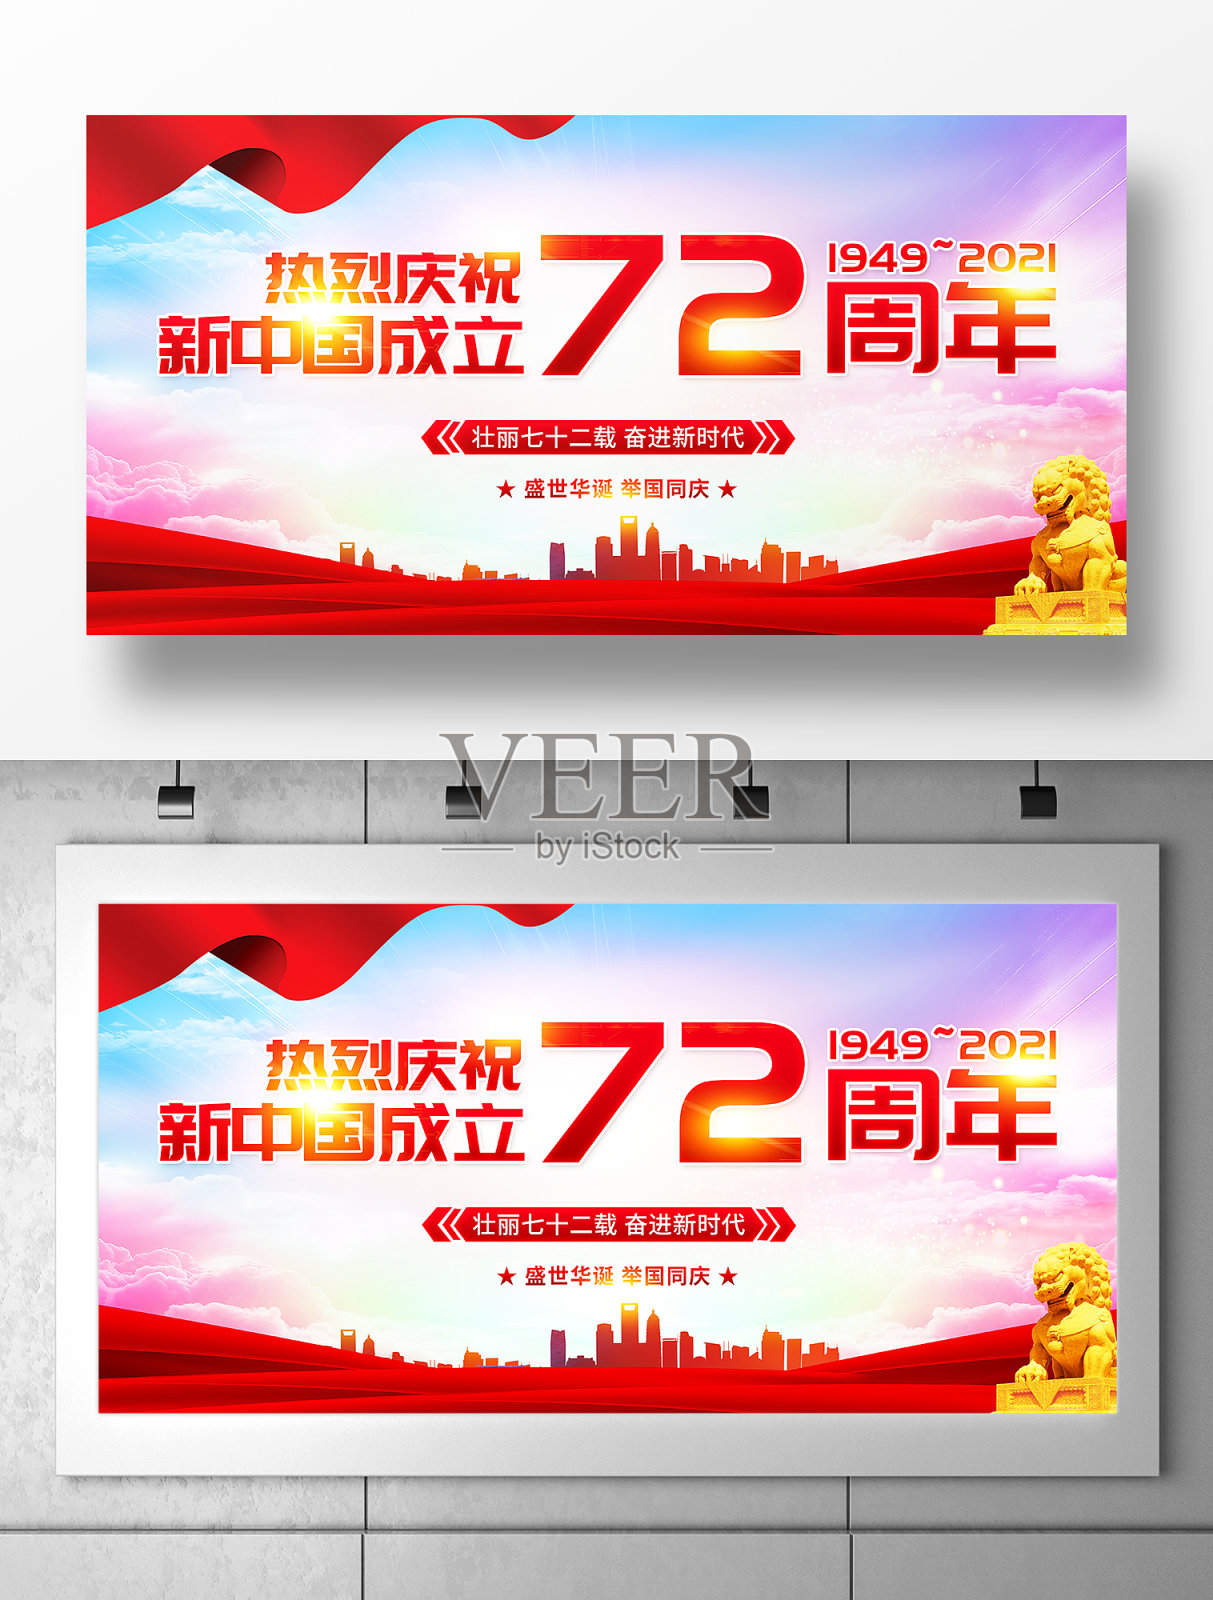 热烈庆祝新中国成立72周年宣传展板设计模板素材